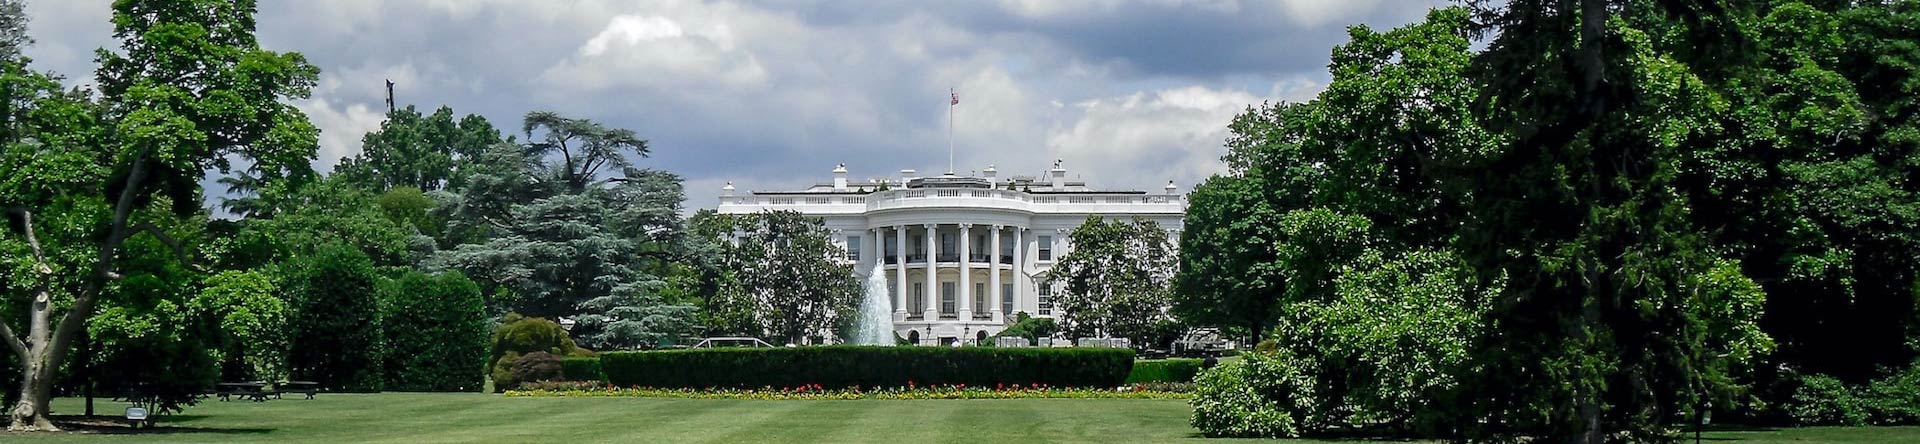 הבית הלבן וושינגטון די.סי.